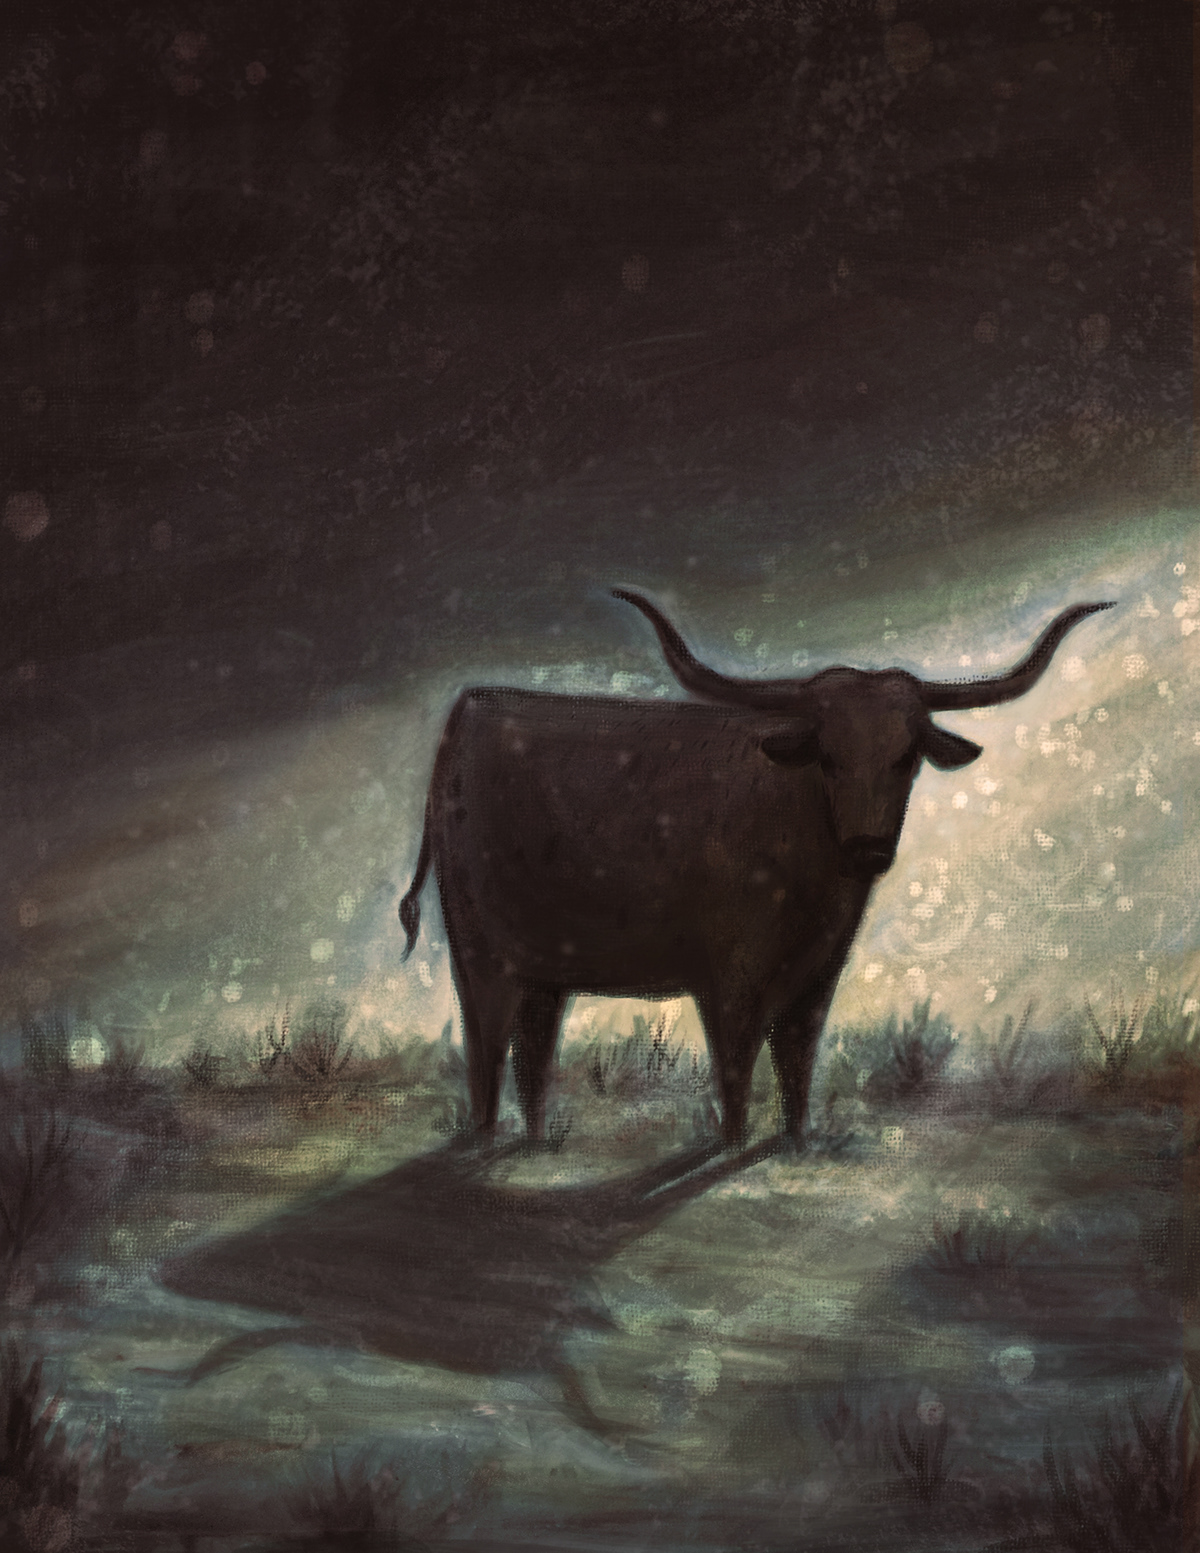 Oil Painting oil on board art digital digital illustration tradigital editorial half skinned steer Annie Proulx